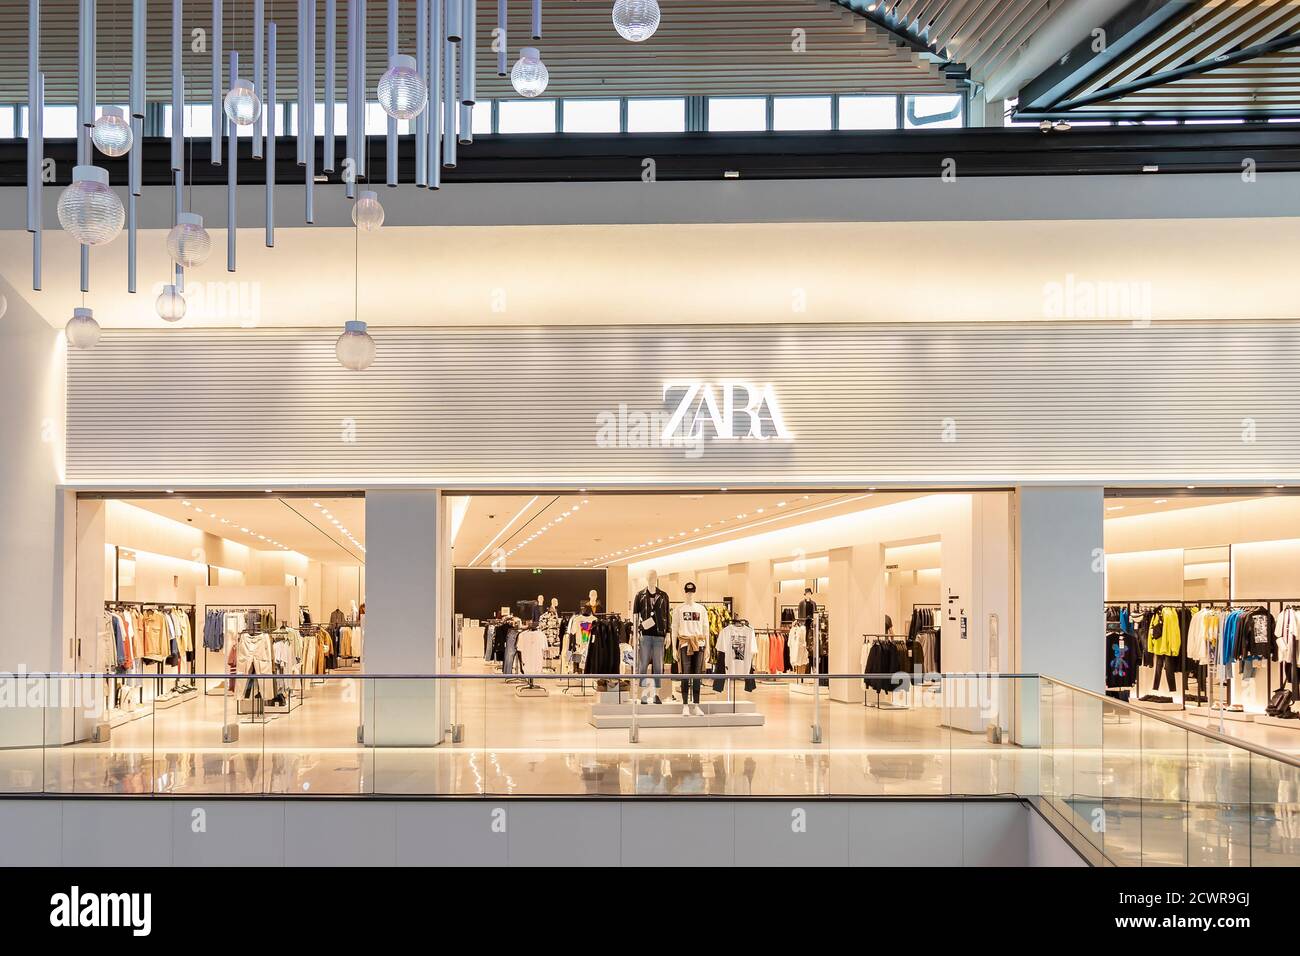 Séville, Espagne - 18 septembre 2020: ZARA Store dans le centre commercial  Lagoh Sevilla. Détaillant espagnol de vêtements spécialisé dans la mode  rapide, les vêtements, les acces Photo Stock - Alamy